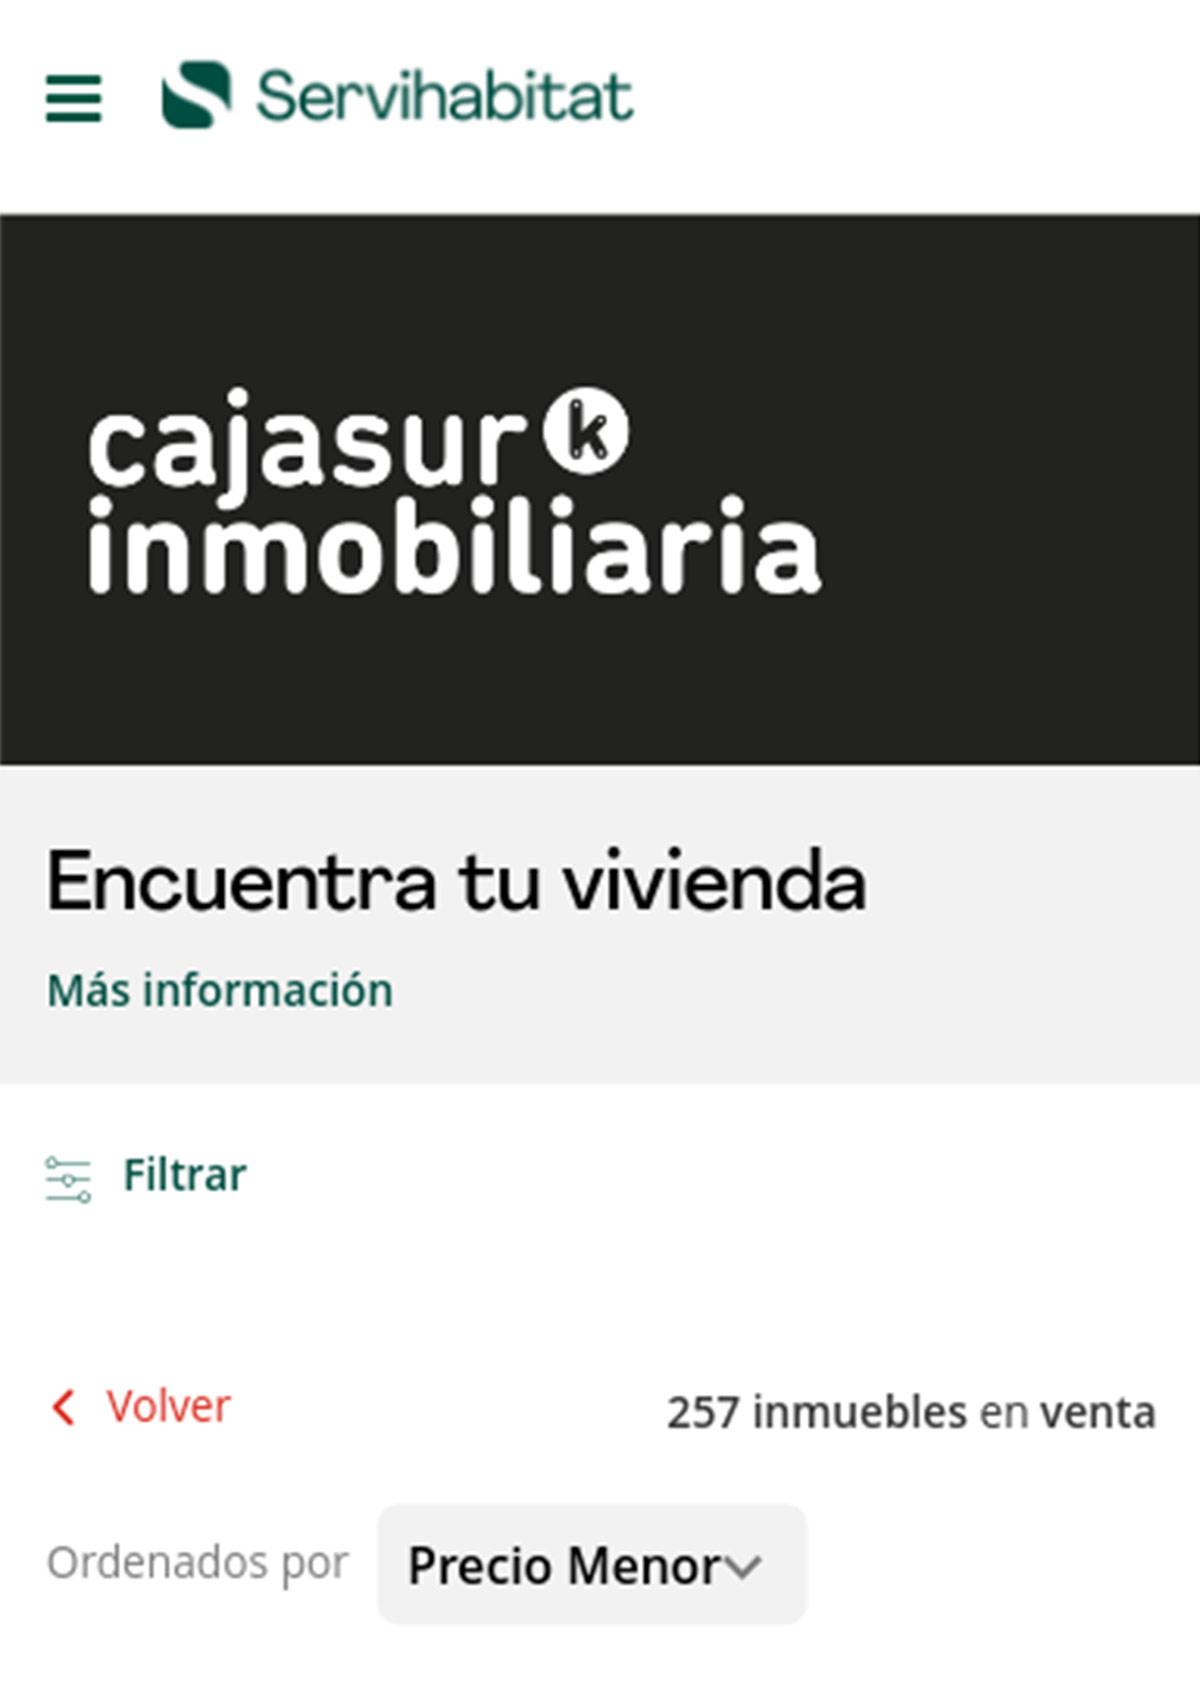 Catálogo de viviendas en Cajasur 